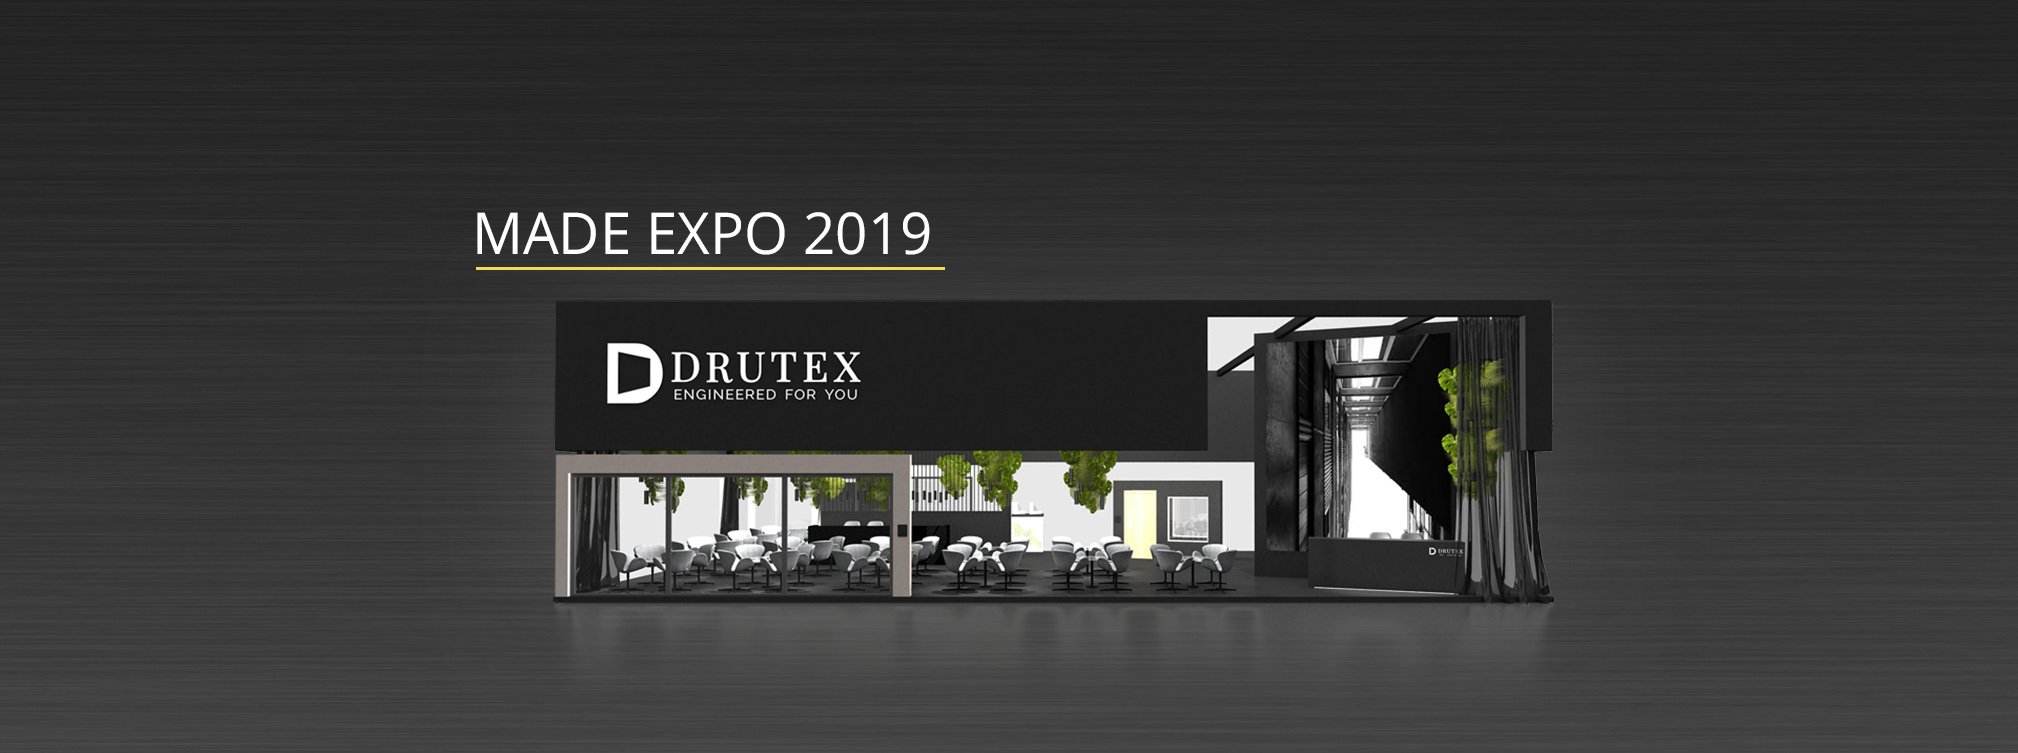 Drutex at the prestigious trade fair in Milan